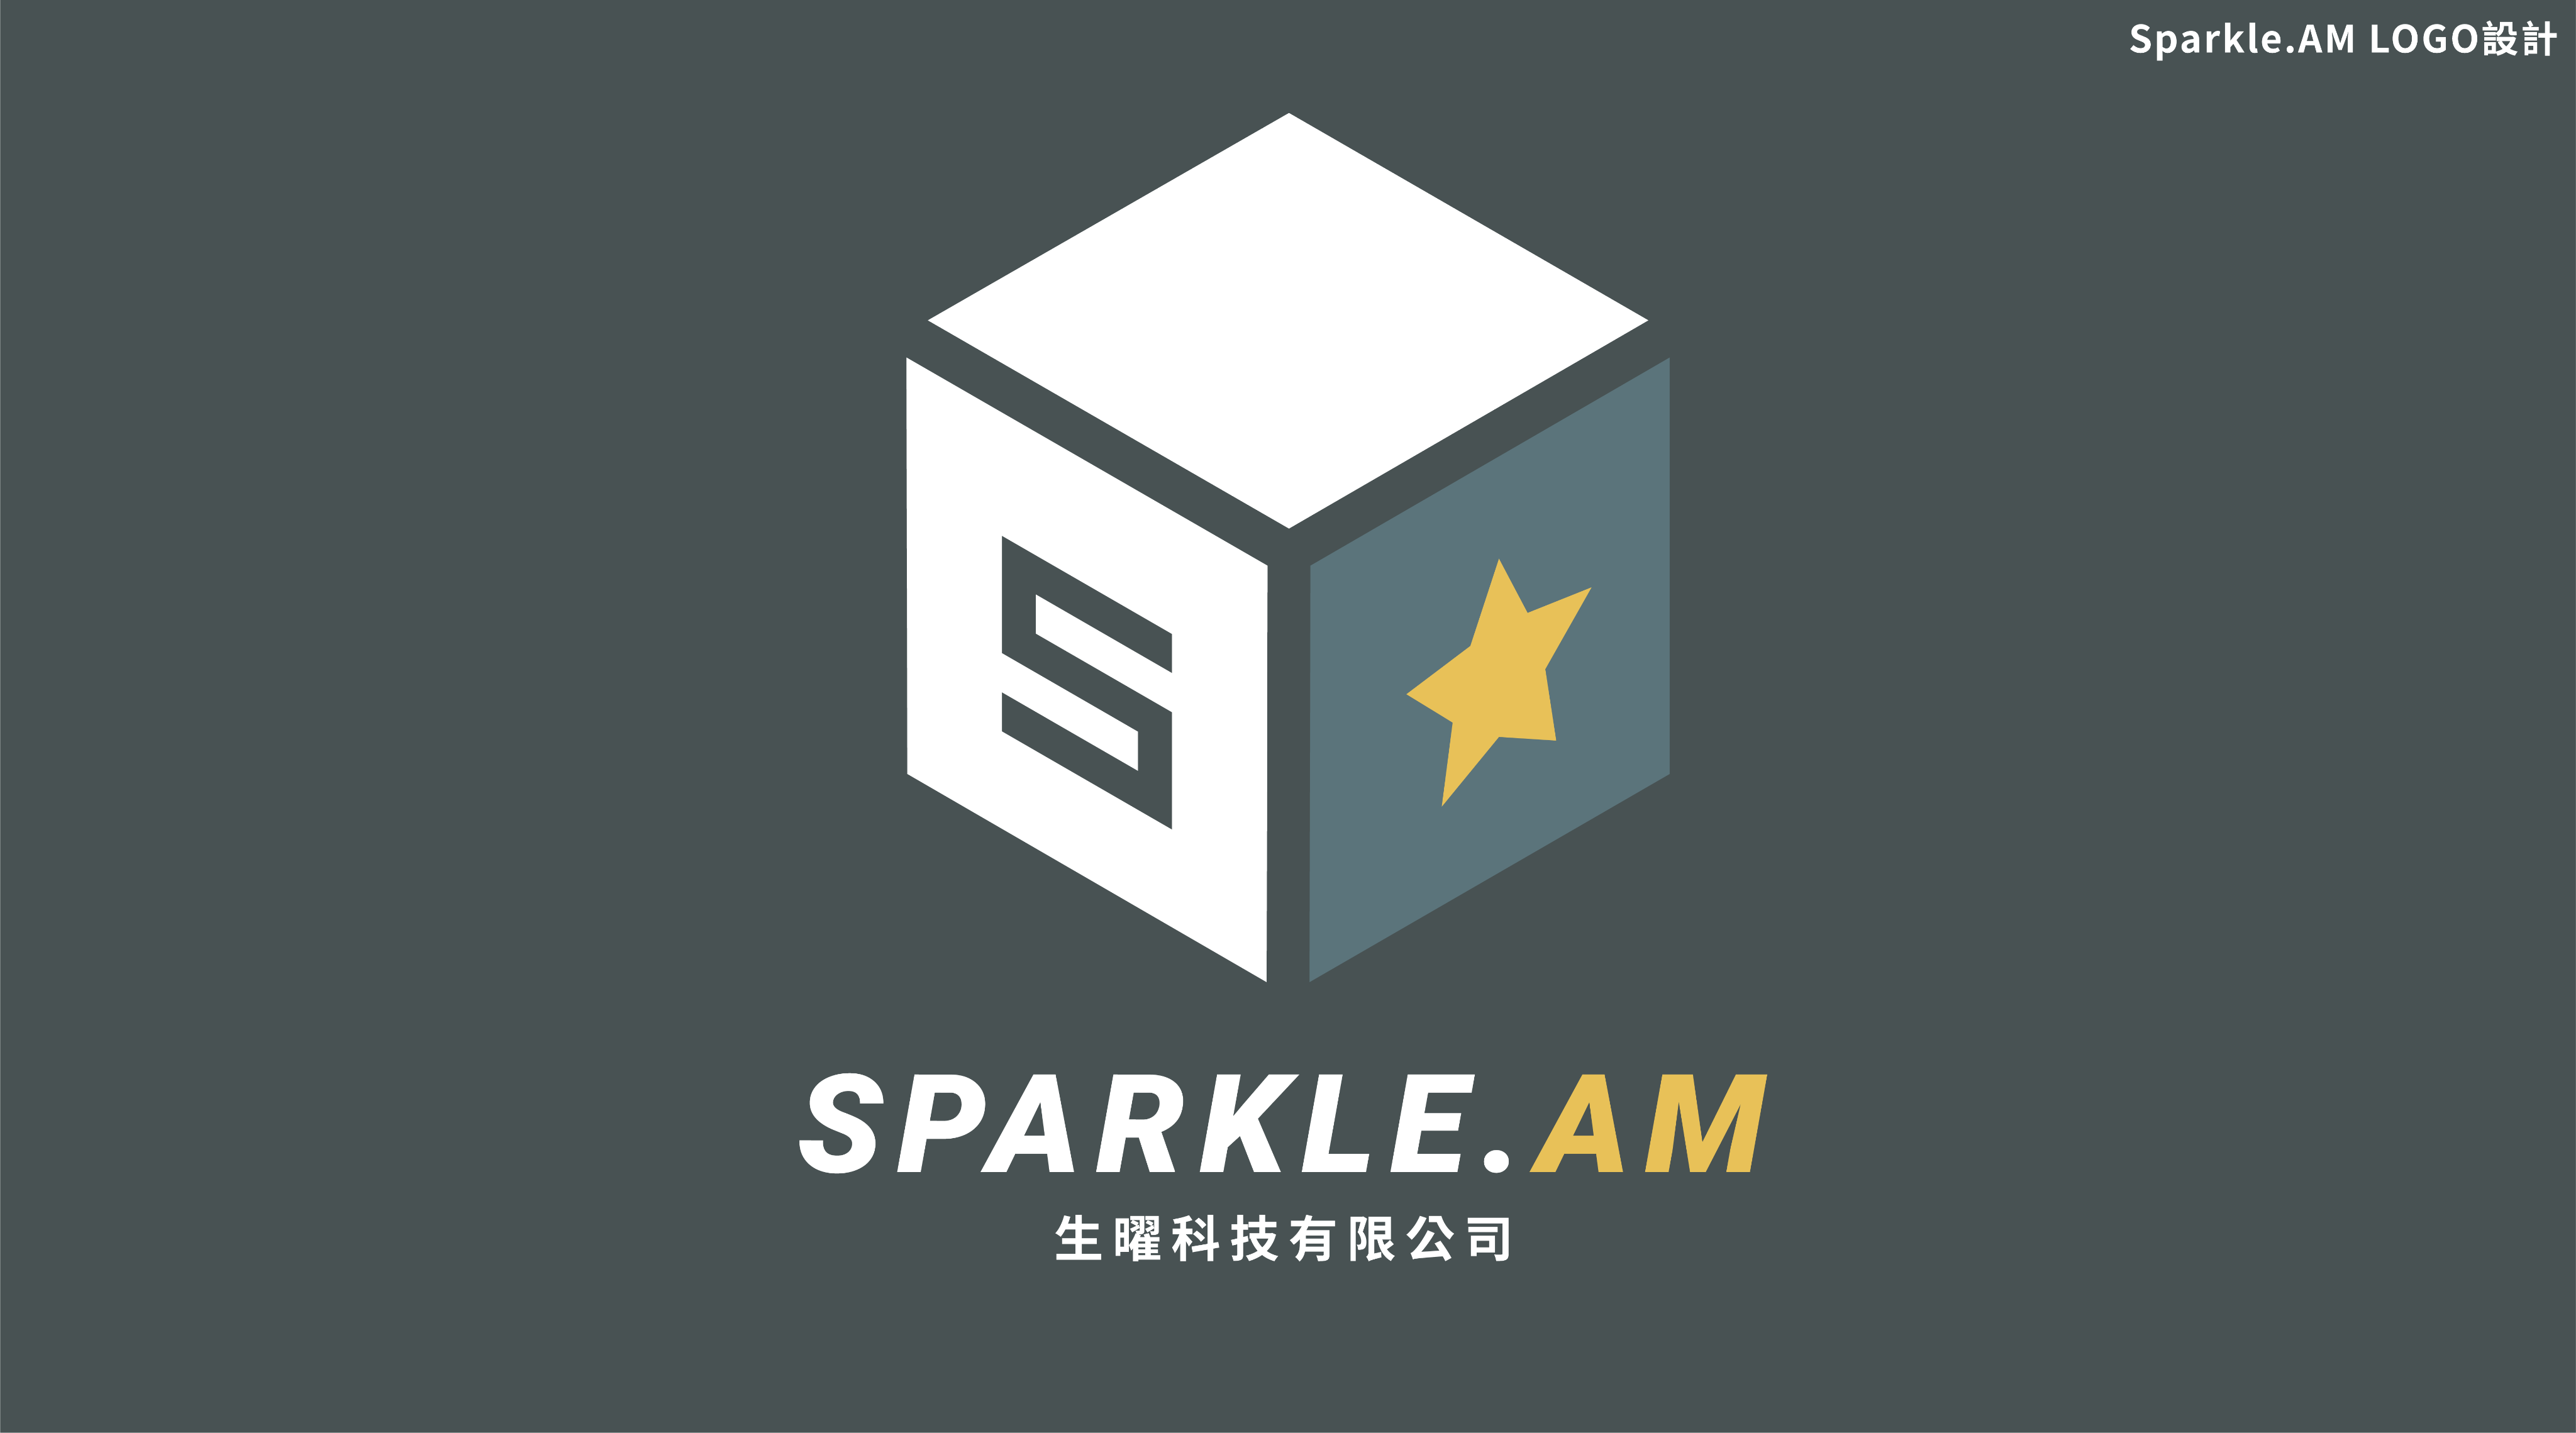 SPARKLE AM TECHNOLOGY CO.,LTD